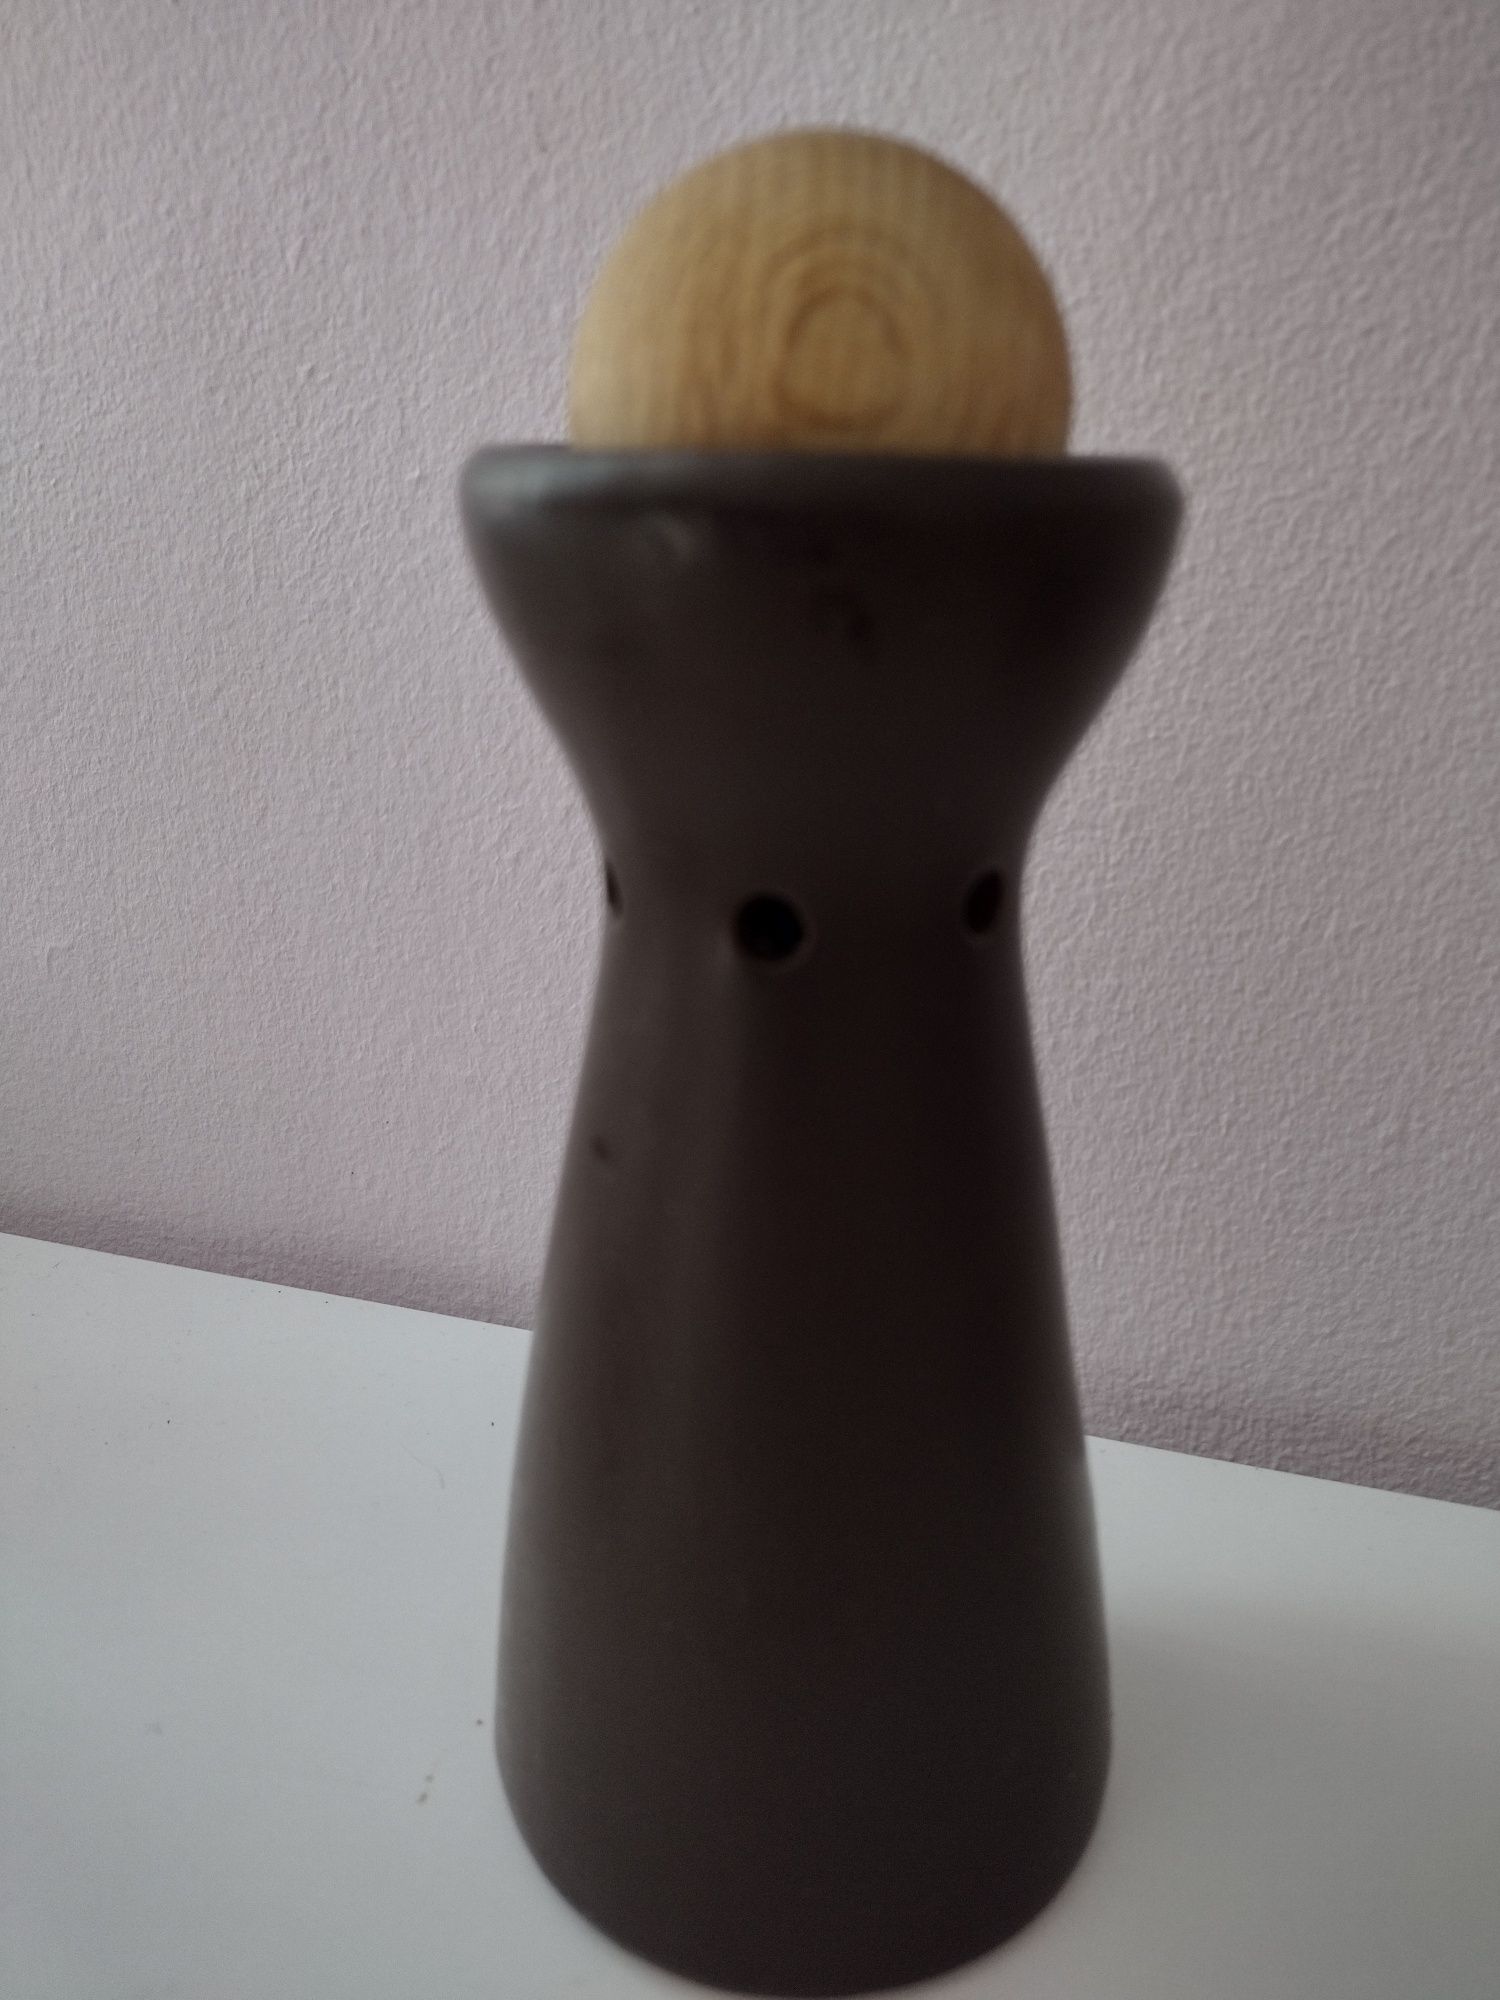 Ceramiczny,kamionkowy kominek z kulą zapachową